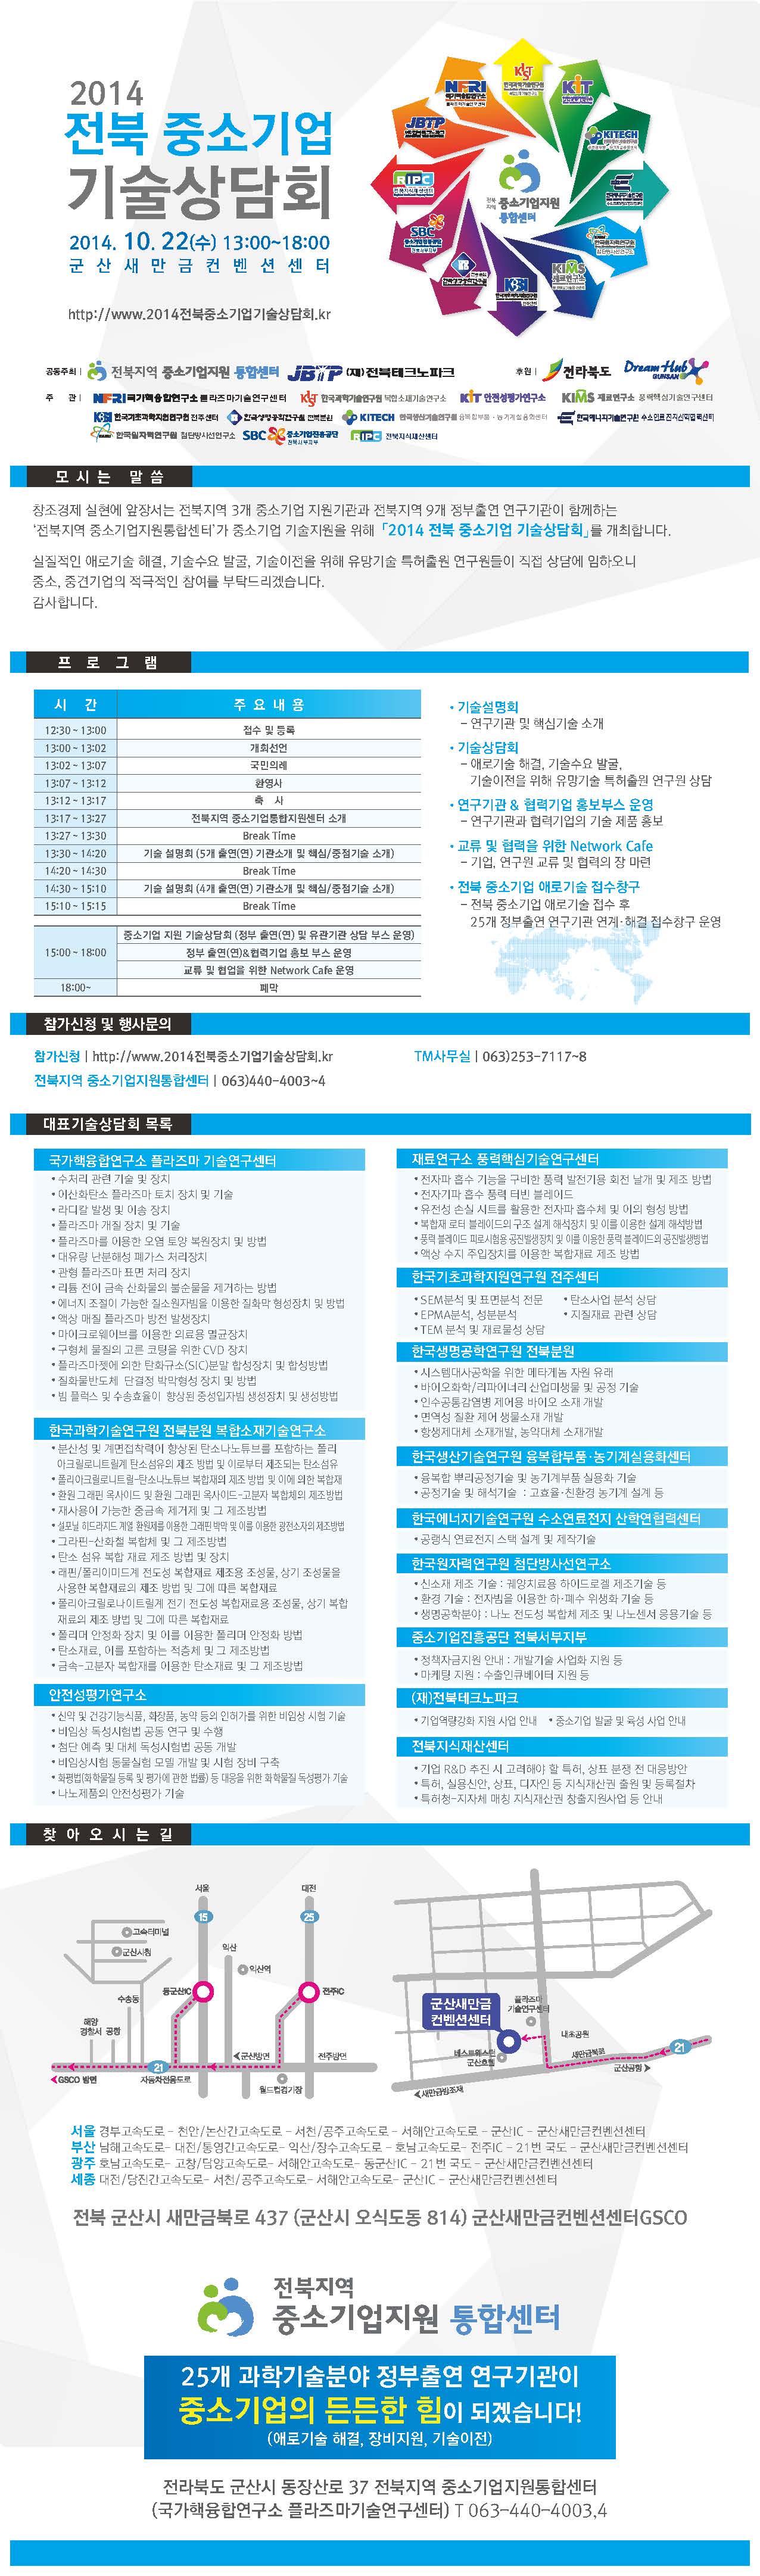 2014 전북 중소기업 기술상담회 개최 관련 내용은 첨부된 pdf 파일 참고